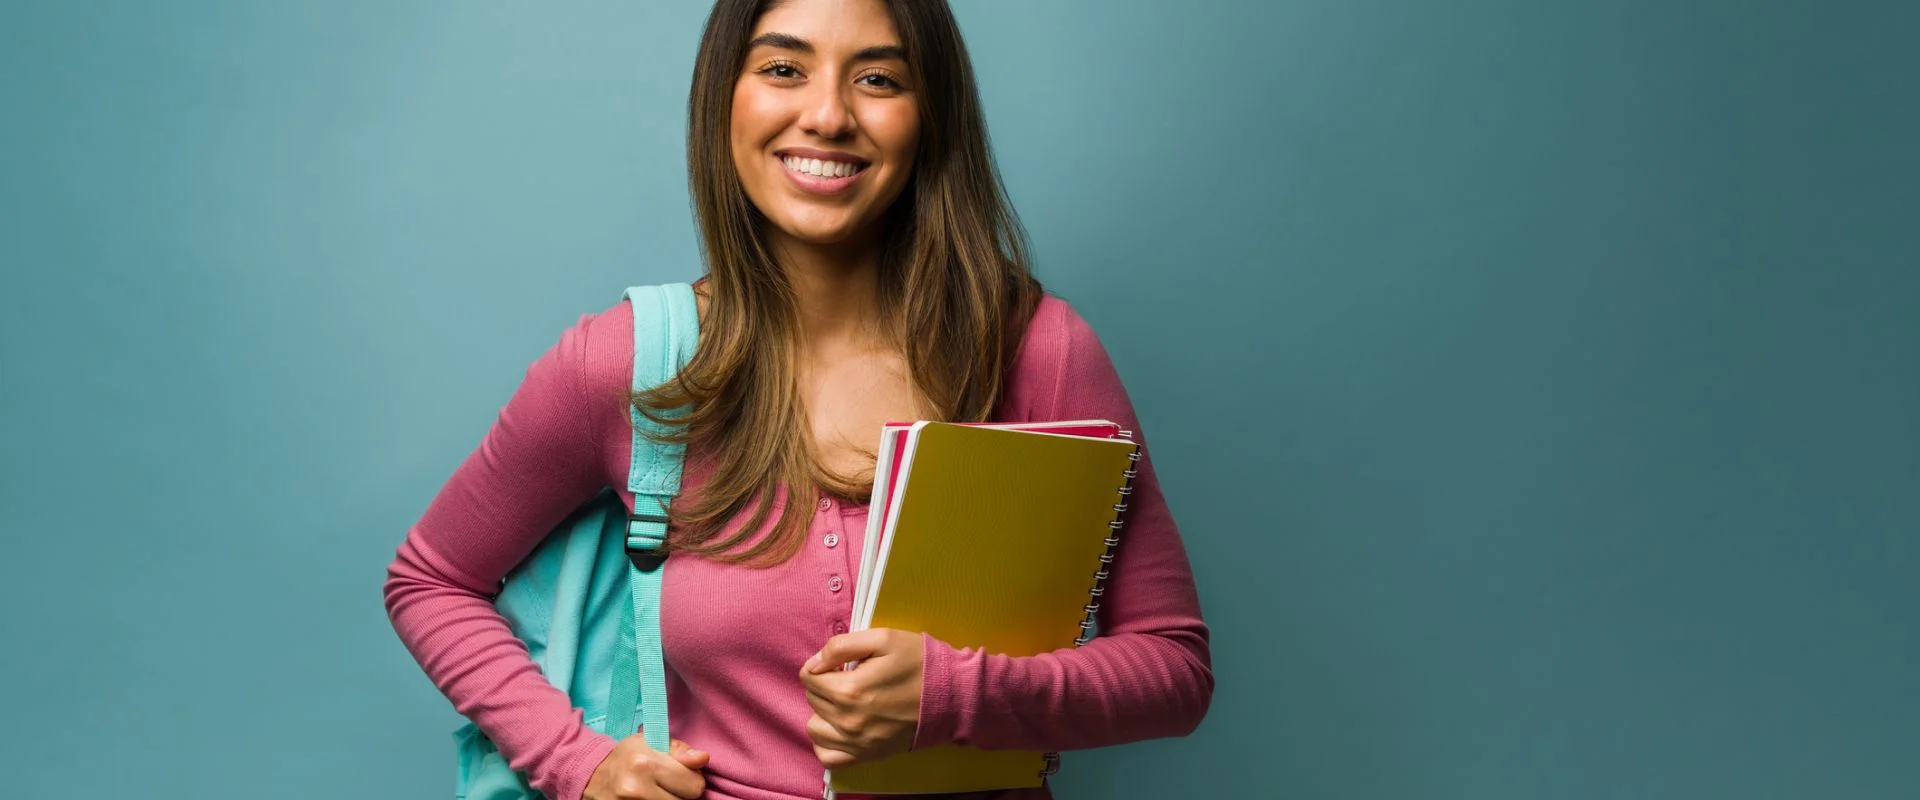 garota segurando livros representando uma estudante